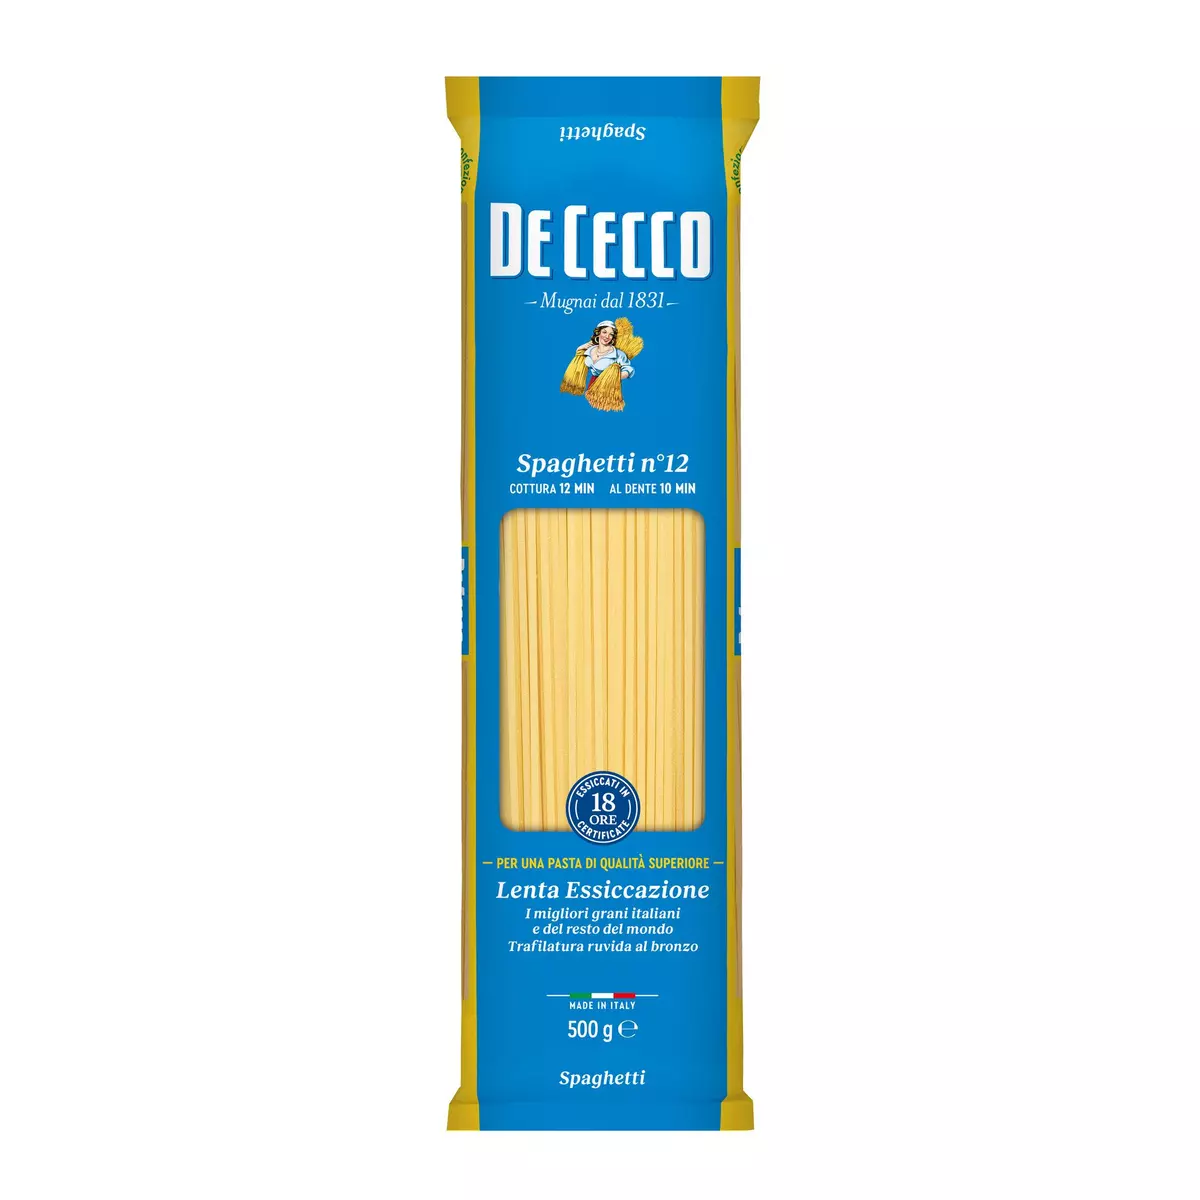 DE CECCO Spaghetti n°12 500g